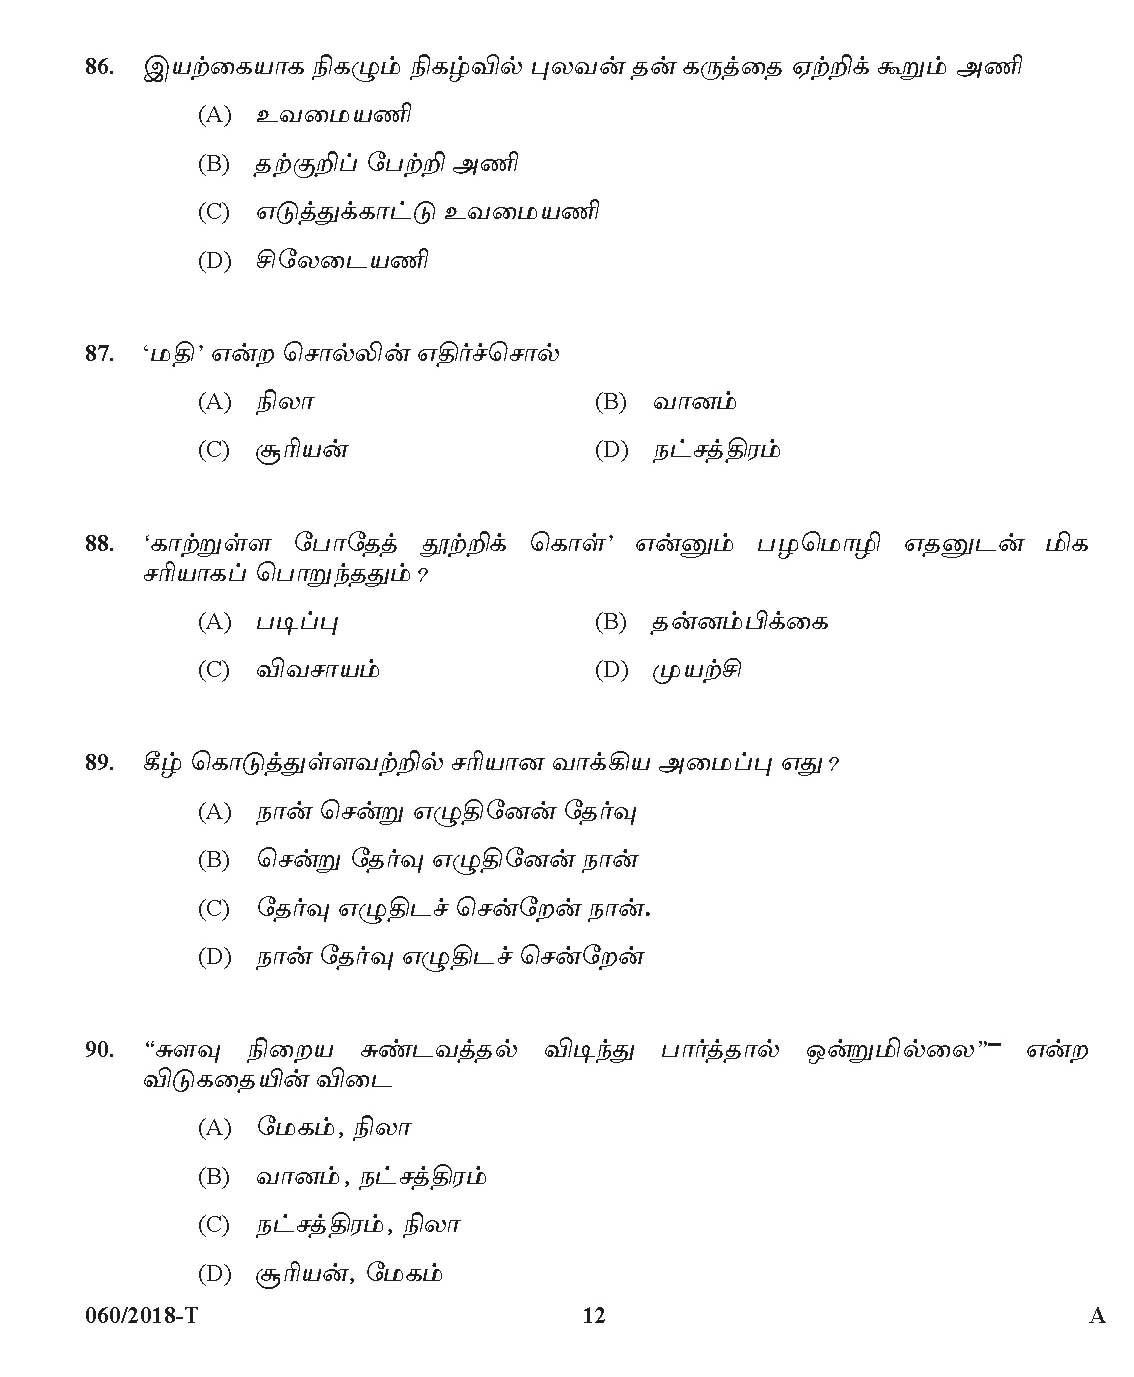 KPSC Junior Assistant Tamil Exam 2018 Code 0602018 11